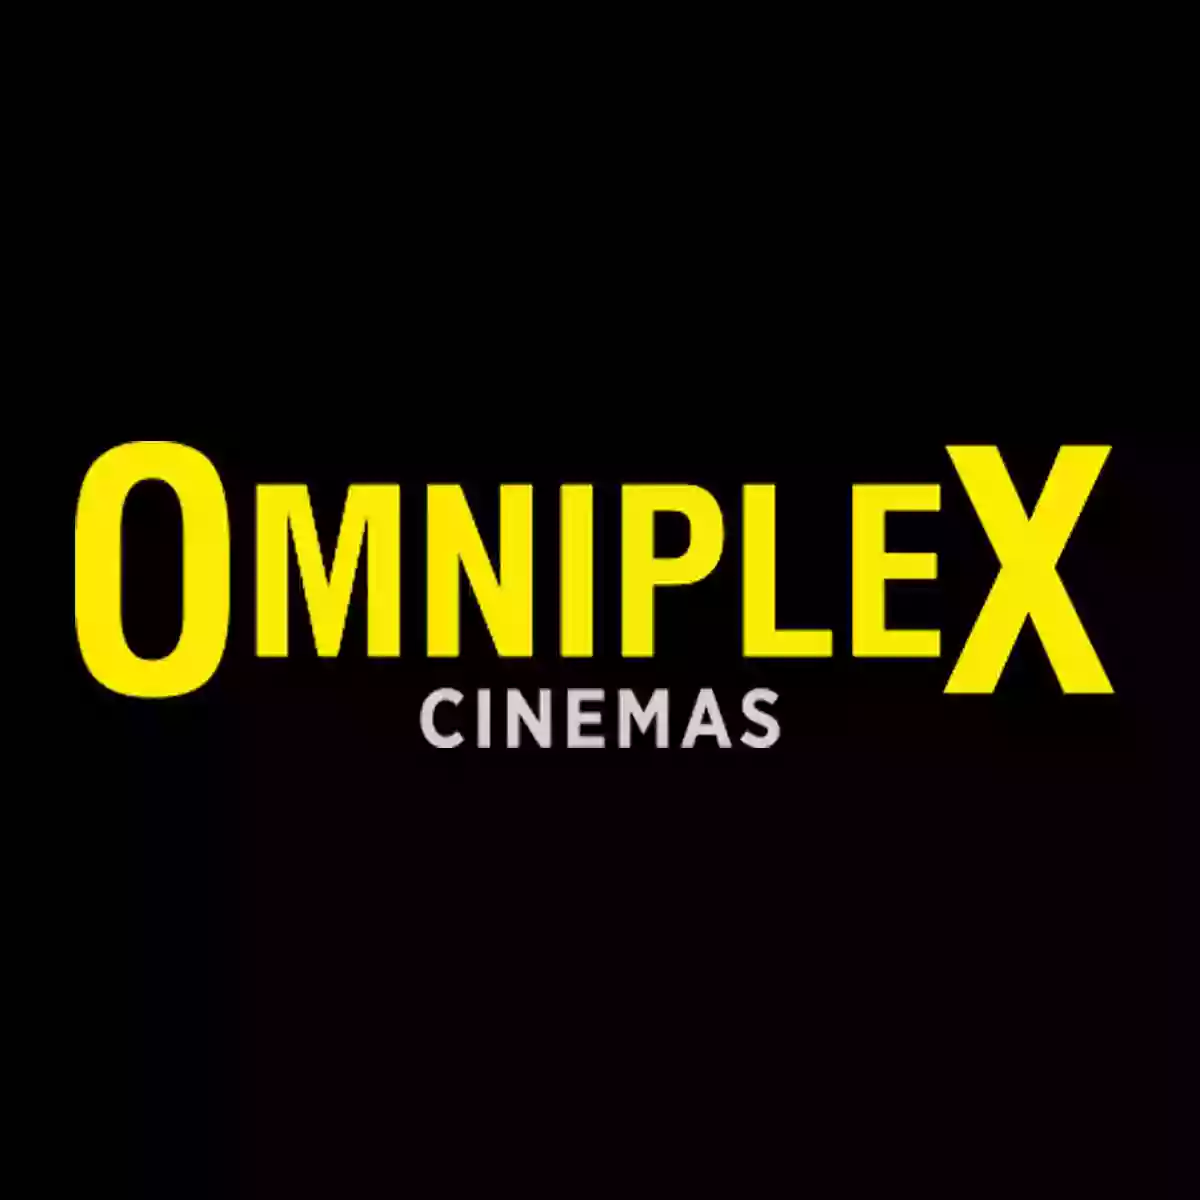 Omniplex Cinema Carlow